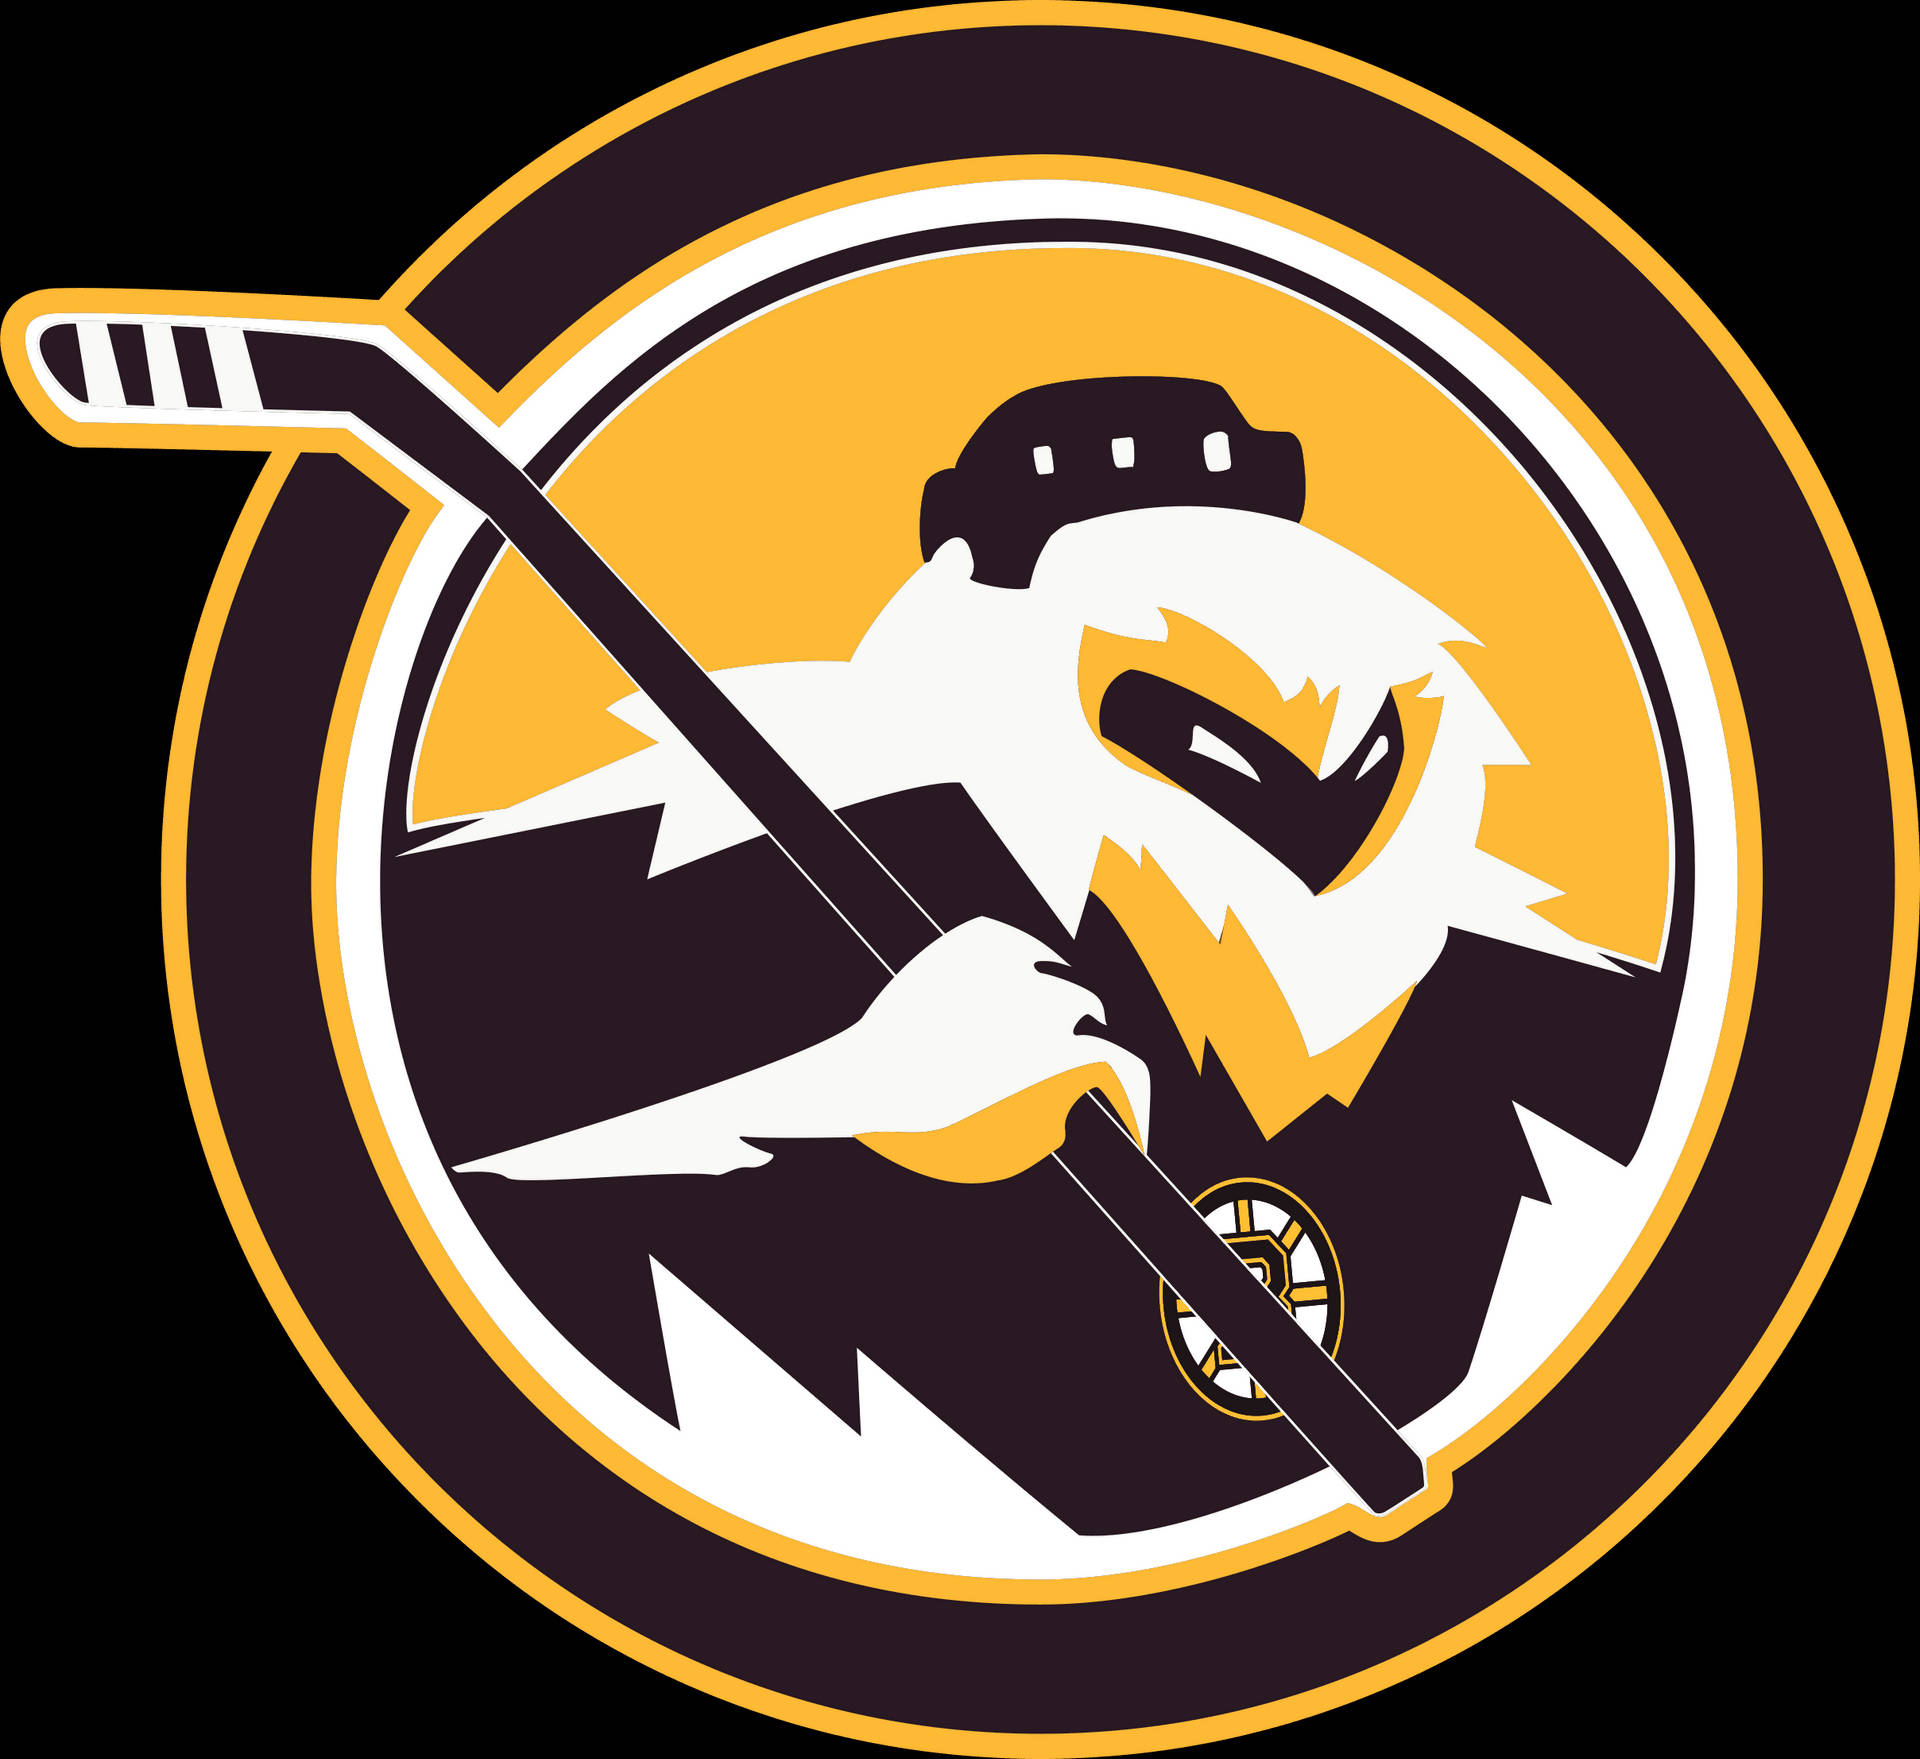 Logodel Equipo De Hockey Sobre Hielo De Los Boston Bruins. Fondo de pantalla